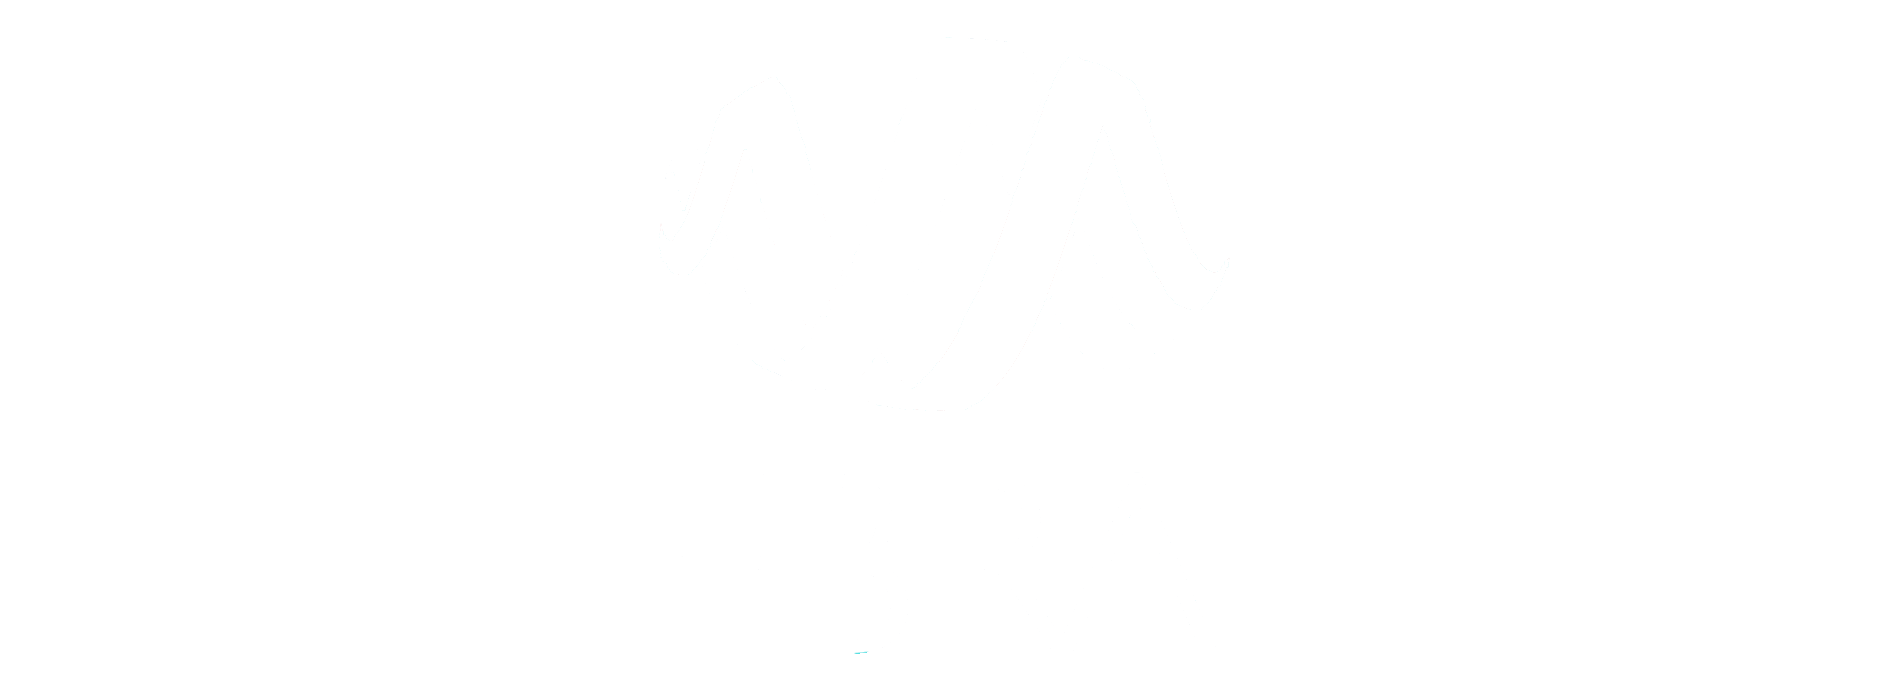 logo_ebra_white